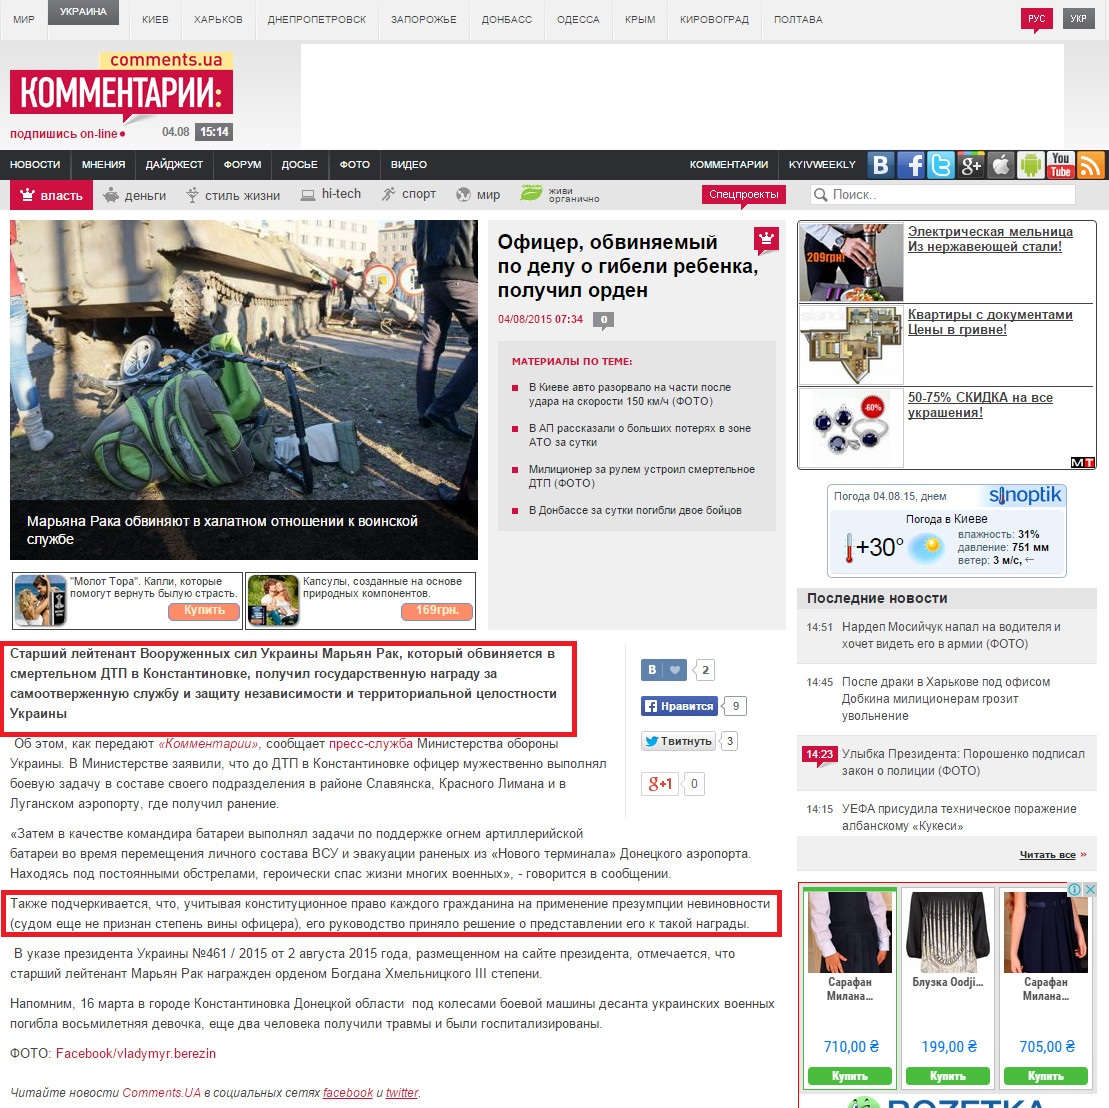 http://comments.ua/politics/520675-ofitser-obvinyaemiy-delu-gibeli.html?fb_ref=Default